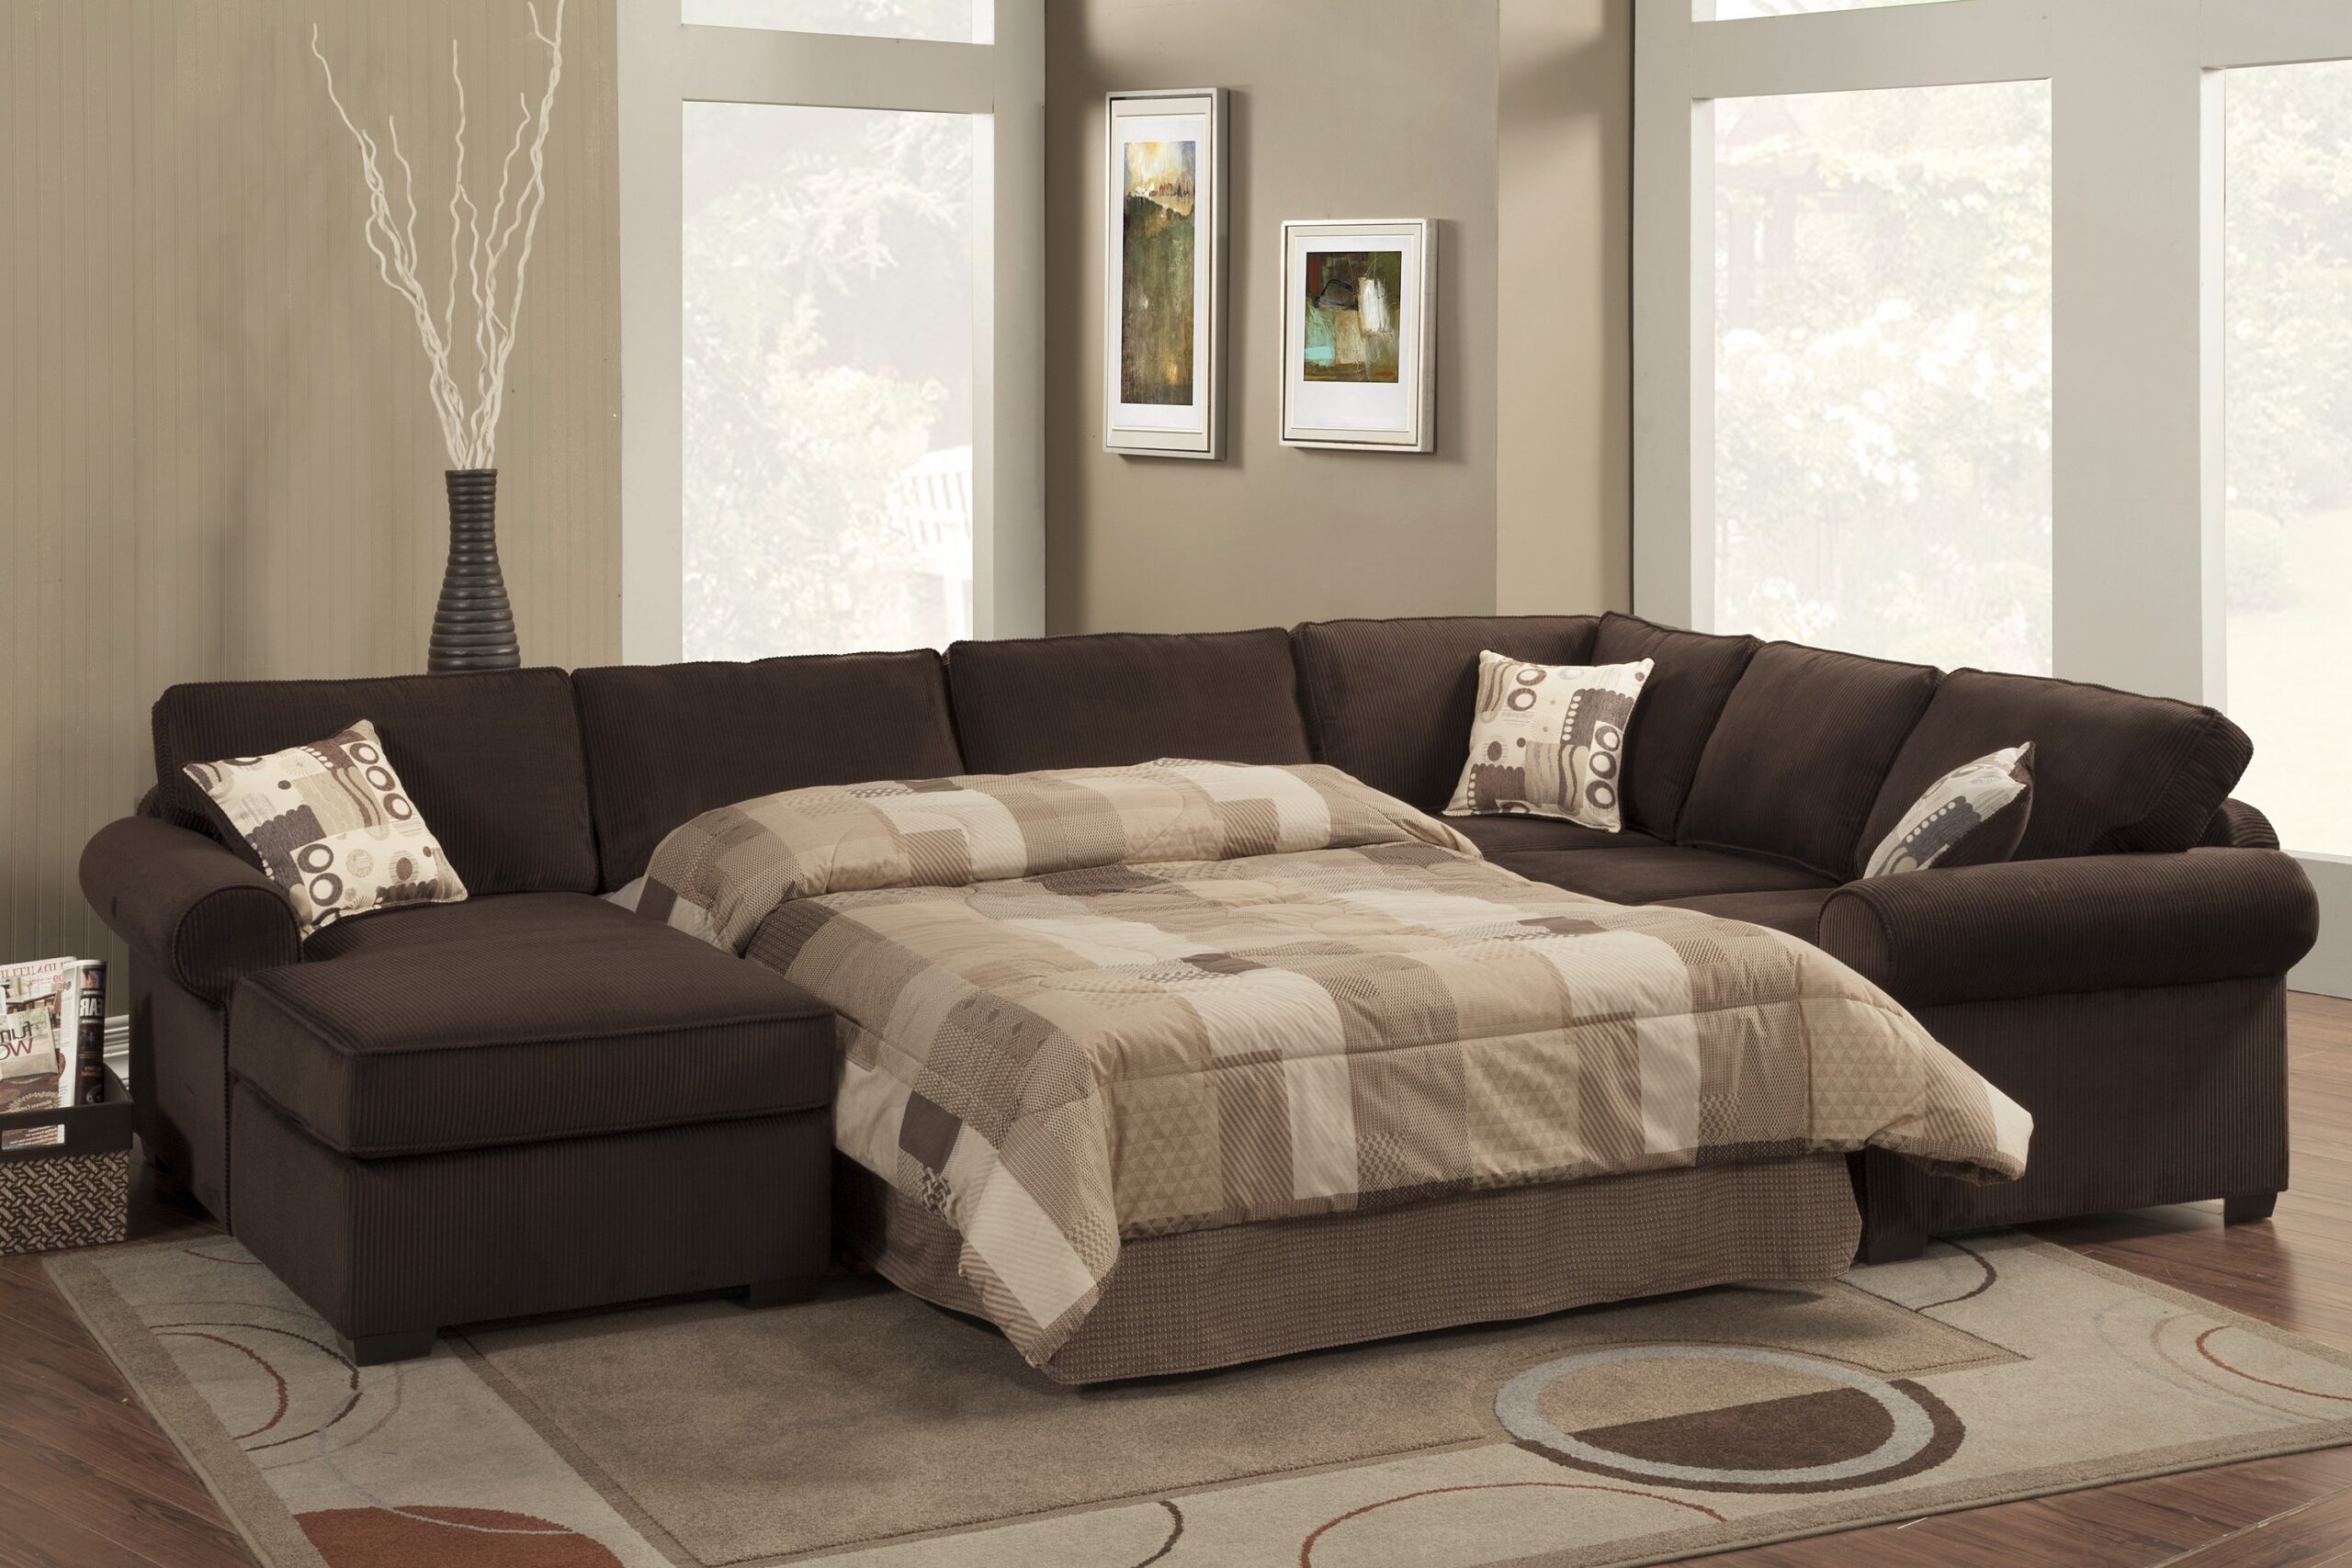 Cozy Sectional Sofas – decordip.com